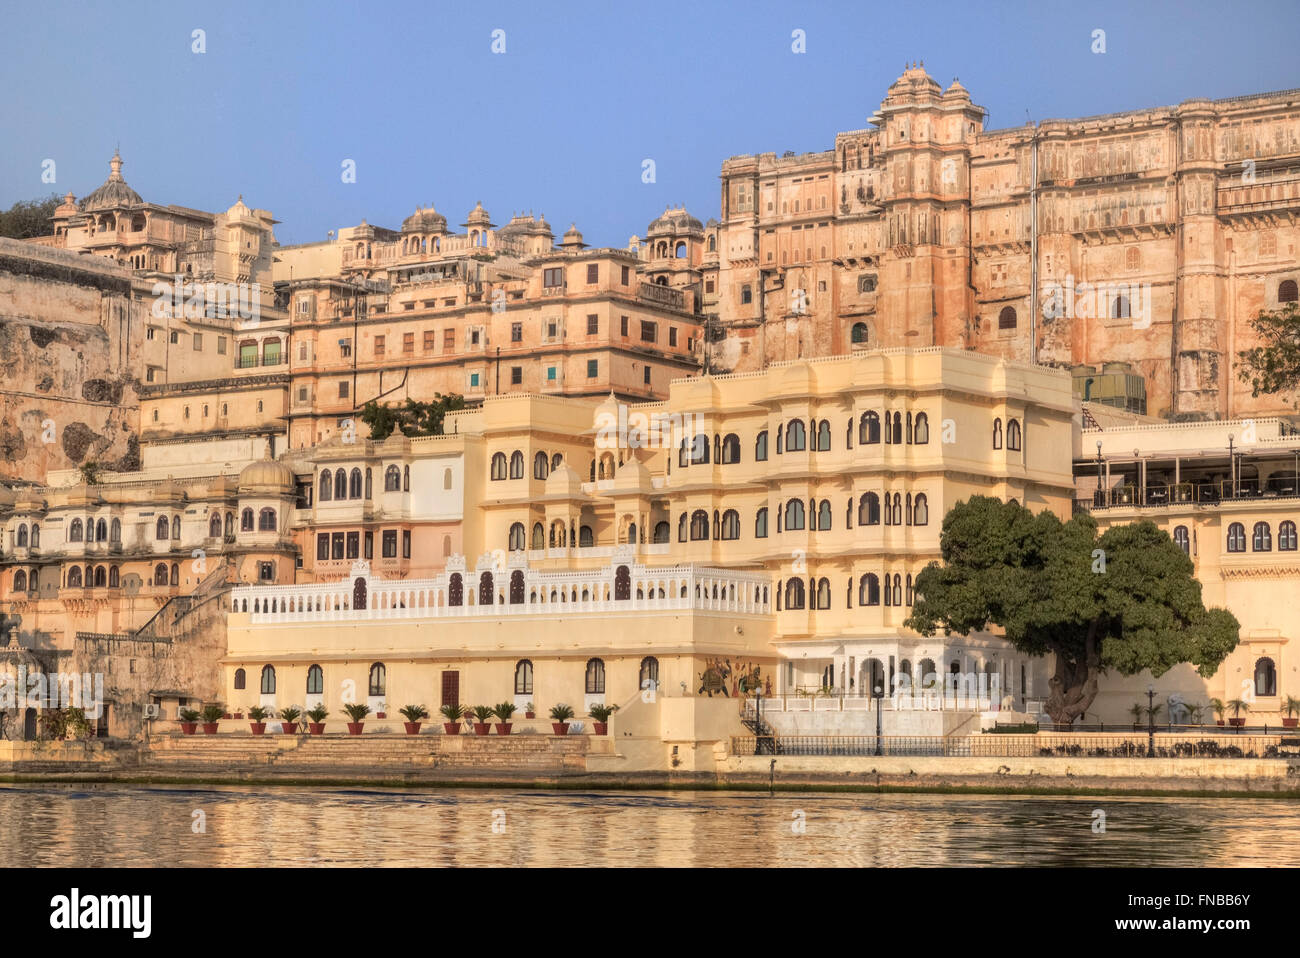 City Palace, Udaipur, le lac Pichola, Rajasthan, Inde Banque D'Images